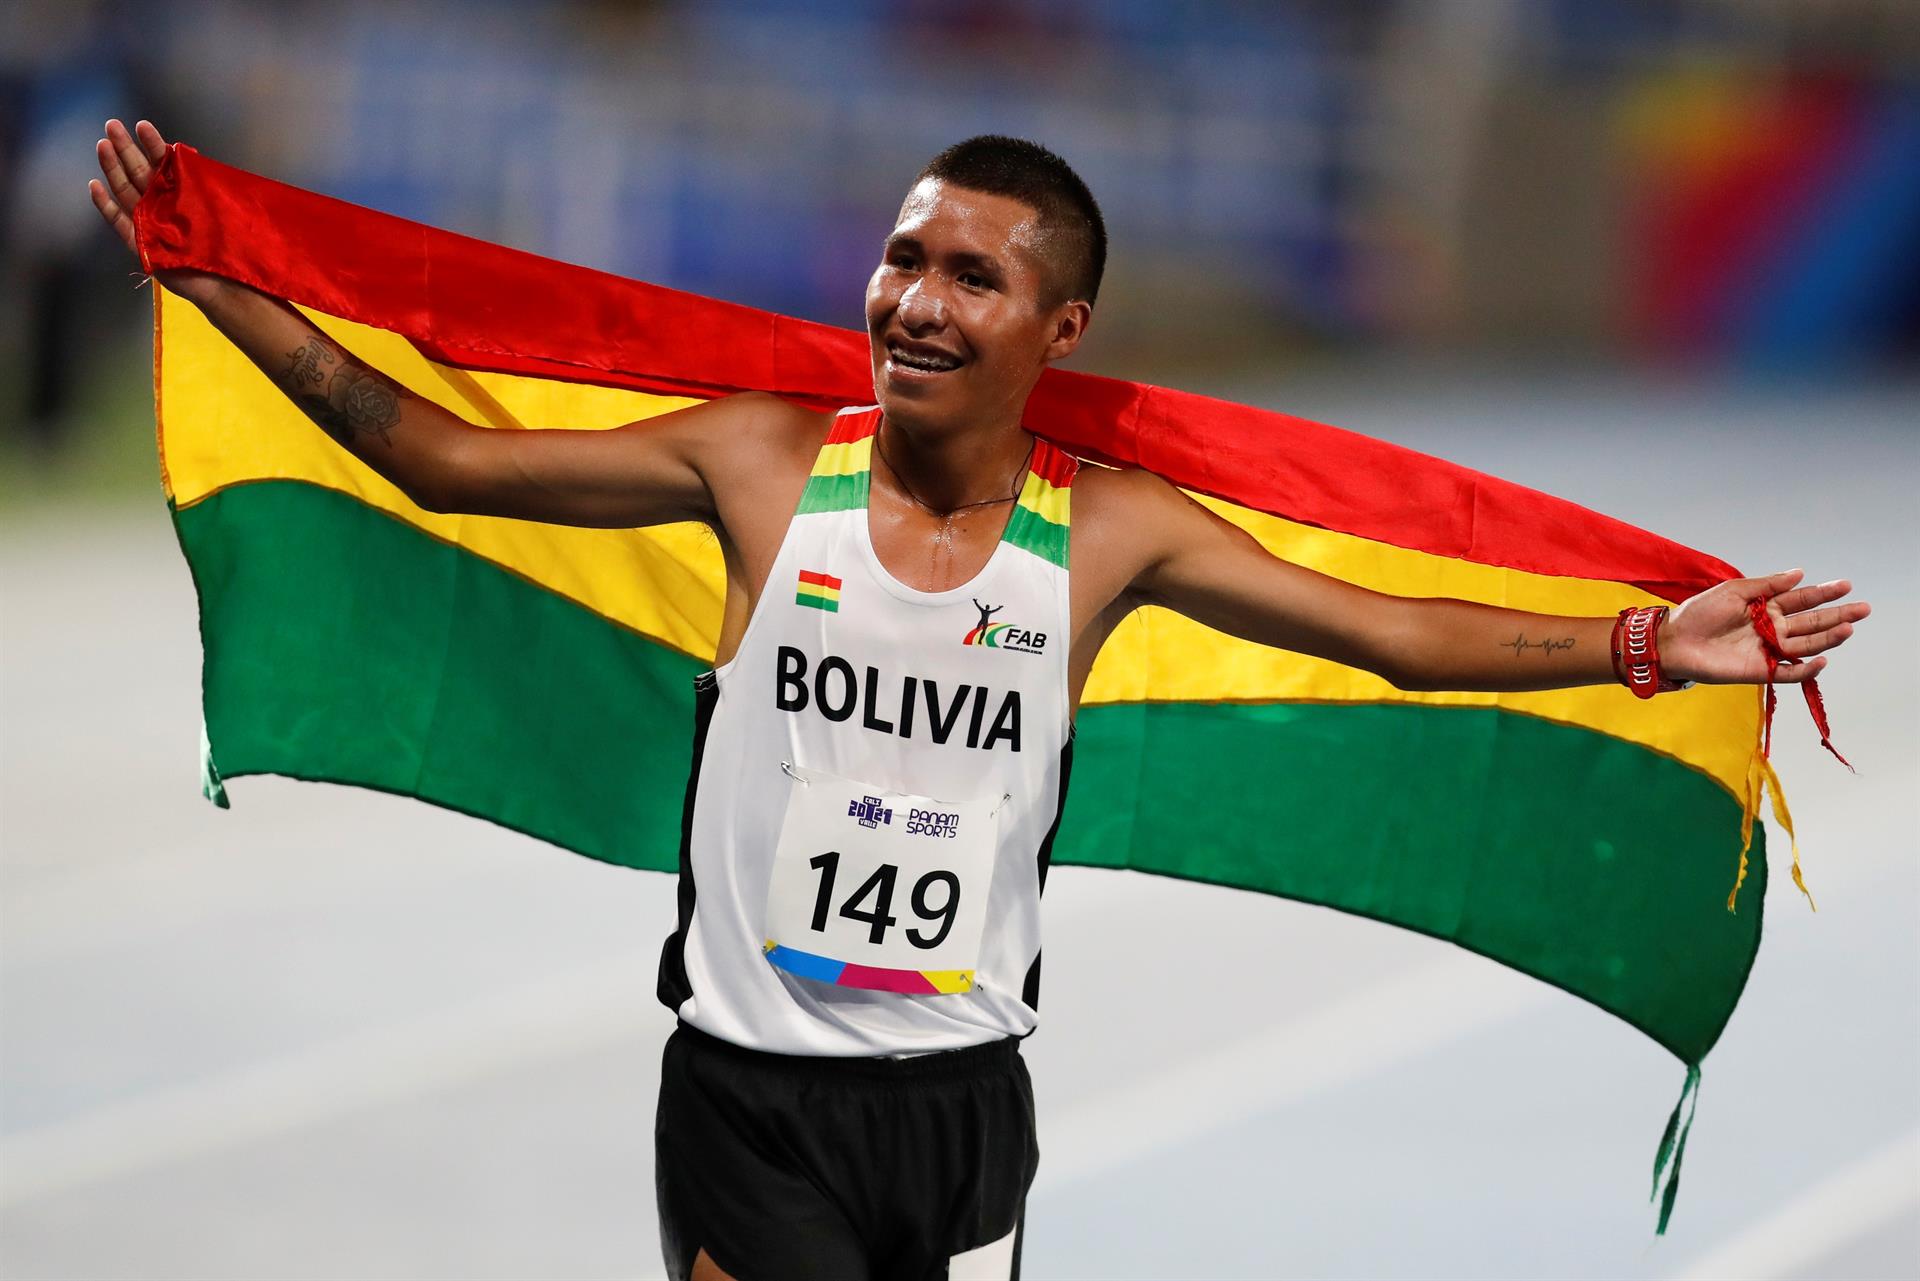 David Ninavia de Bolivia celebra hoy, al ganar 5.000m masculino en el atletismo de los Juegos Panamericanos Junior en el estadio Pascual Guerrero en Cali (Colombia). EFE/Ernesto Guzmán Jr.